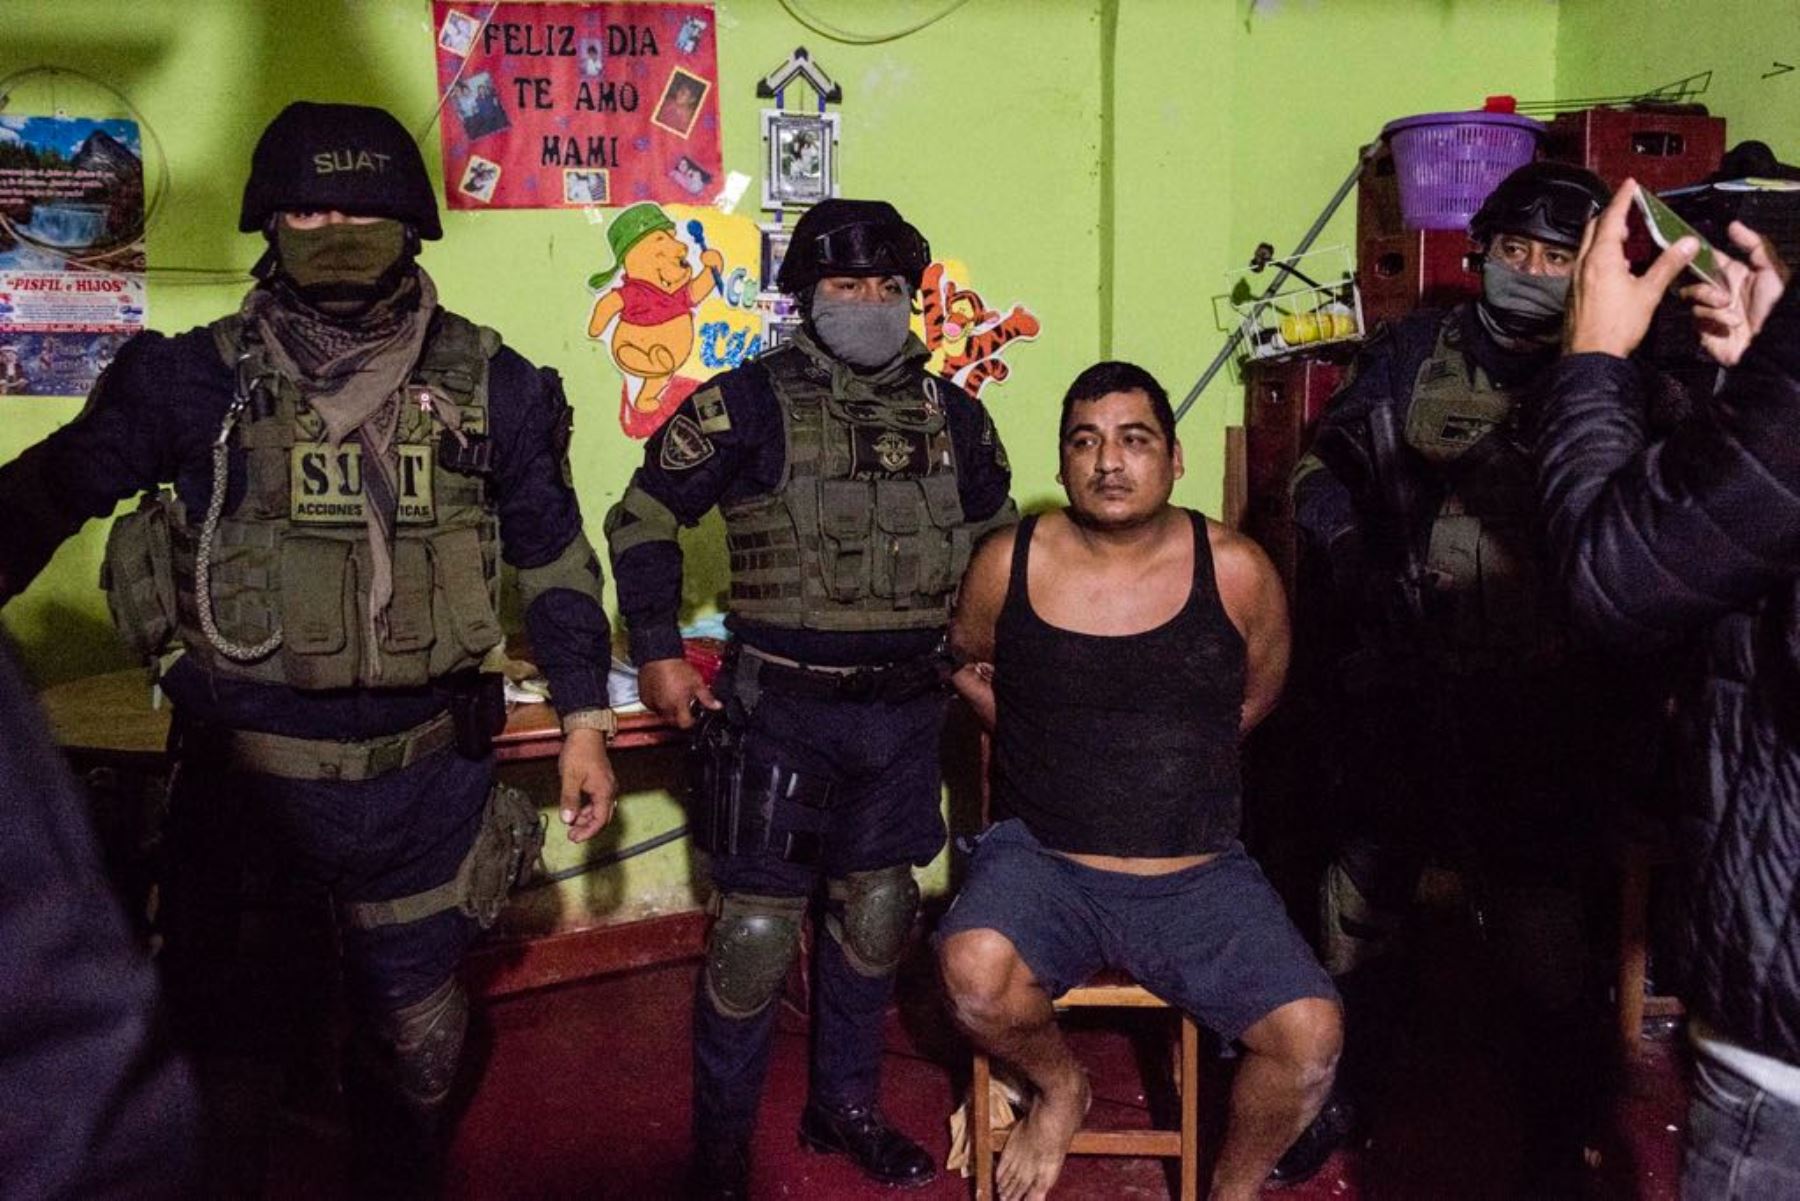 Policía detiene a 21 presuntos miembros de organización criminal "Los charlys de Chiclayo", que operaba en Chiclayo.